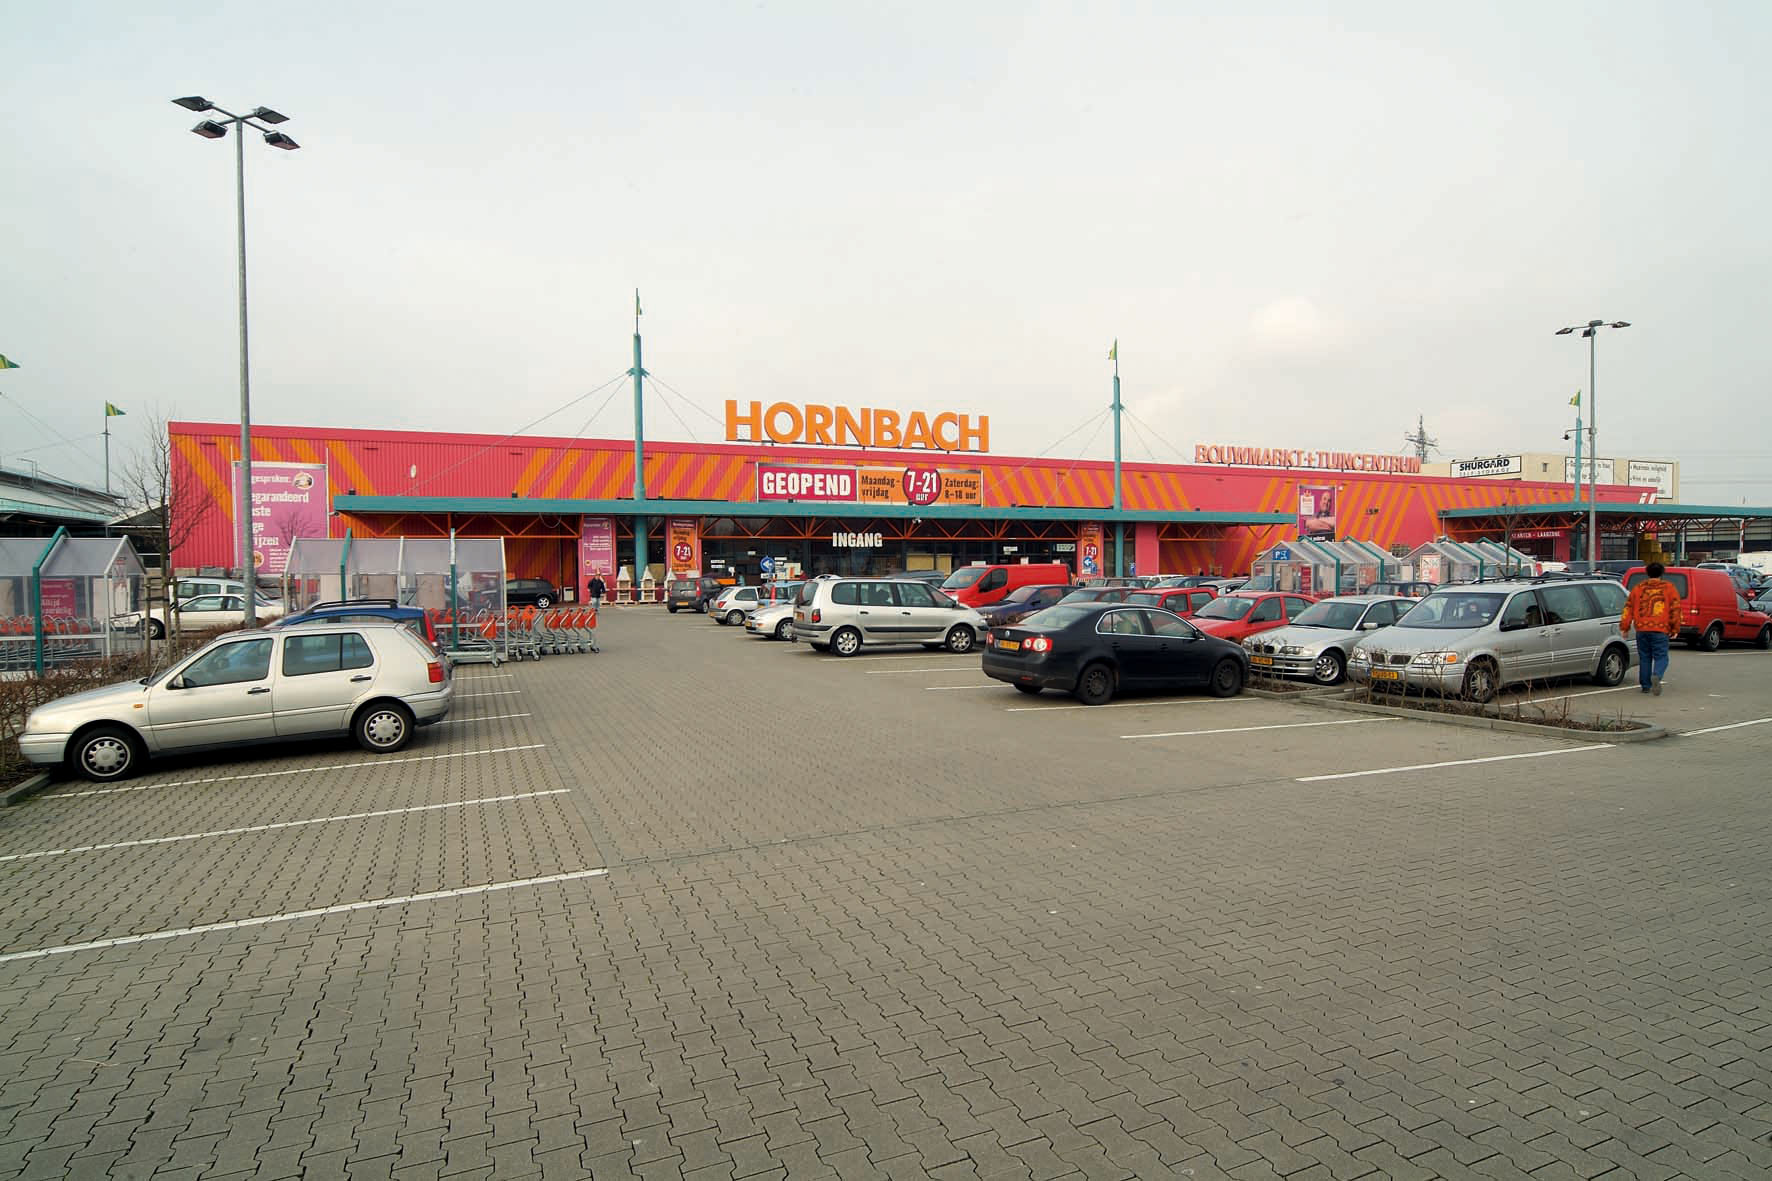 Hornbach tien jaar in Nieuwegein - Hornbach Newsroom
